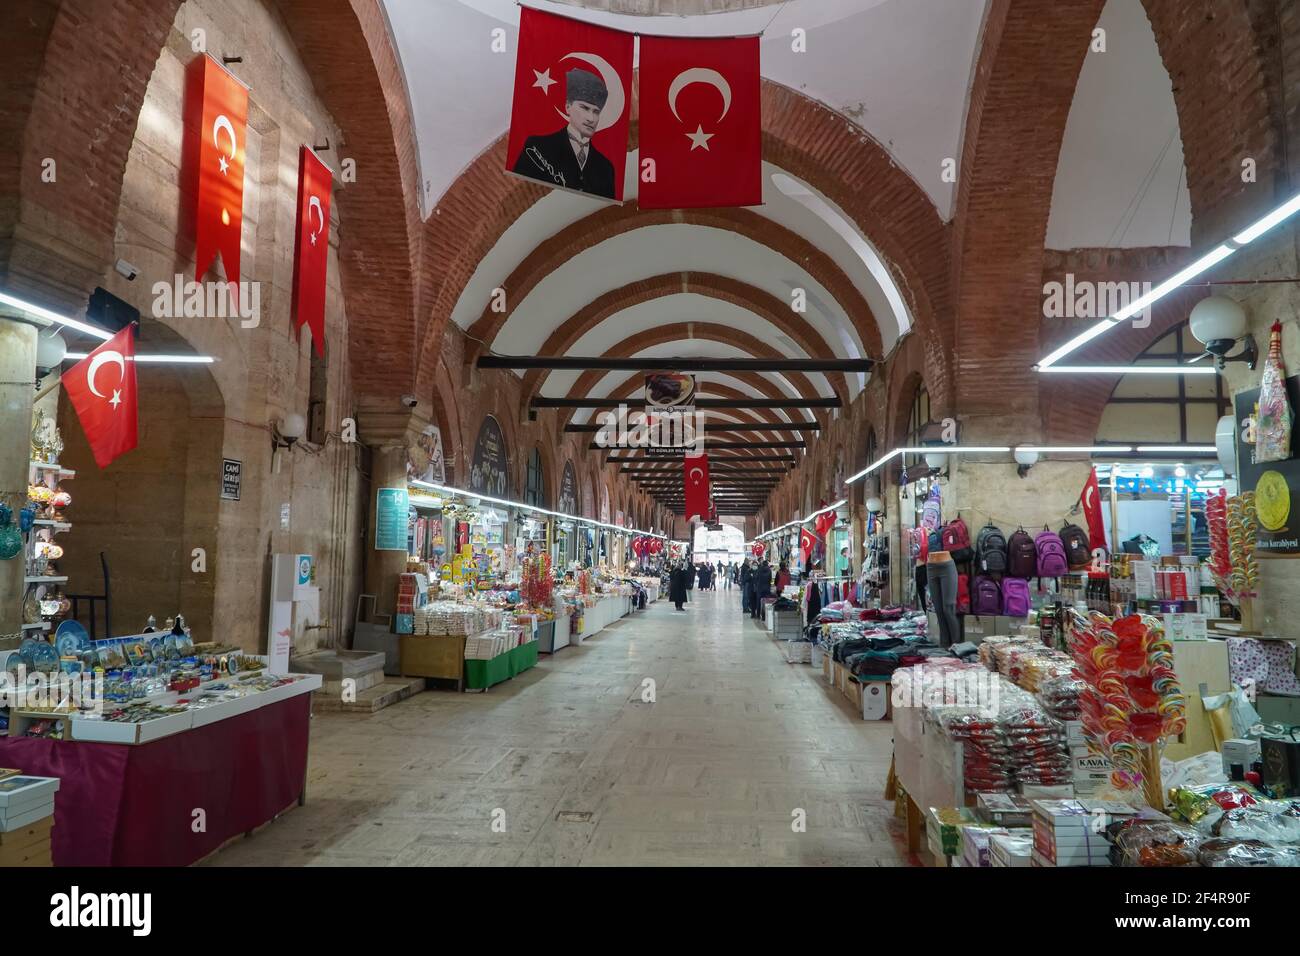 Edirne, Turchia - 26 febbraio 2021 - all'interno del Bazaar di Edirne, Turchia occidentale con negozi, bandiera turca, e Atatürk poster Foto Stock